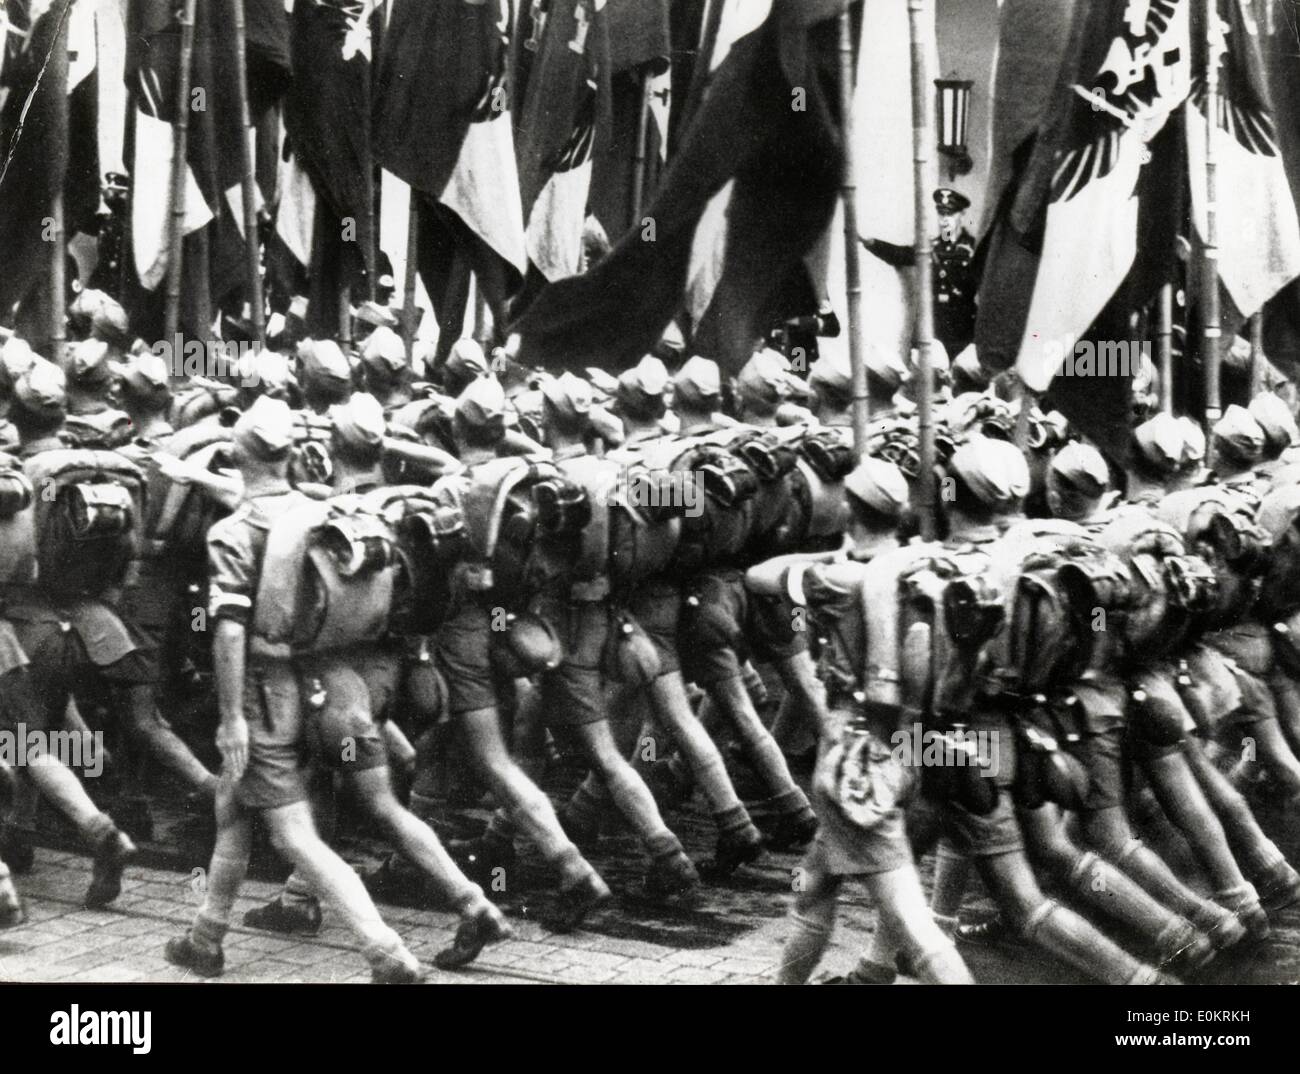 01 janvier 1940 - Berlin, Allemagne - Photo : circa 1930s-1940s. Le mouvement de jeunesse nazie. Banque D'Images